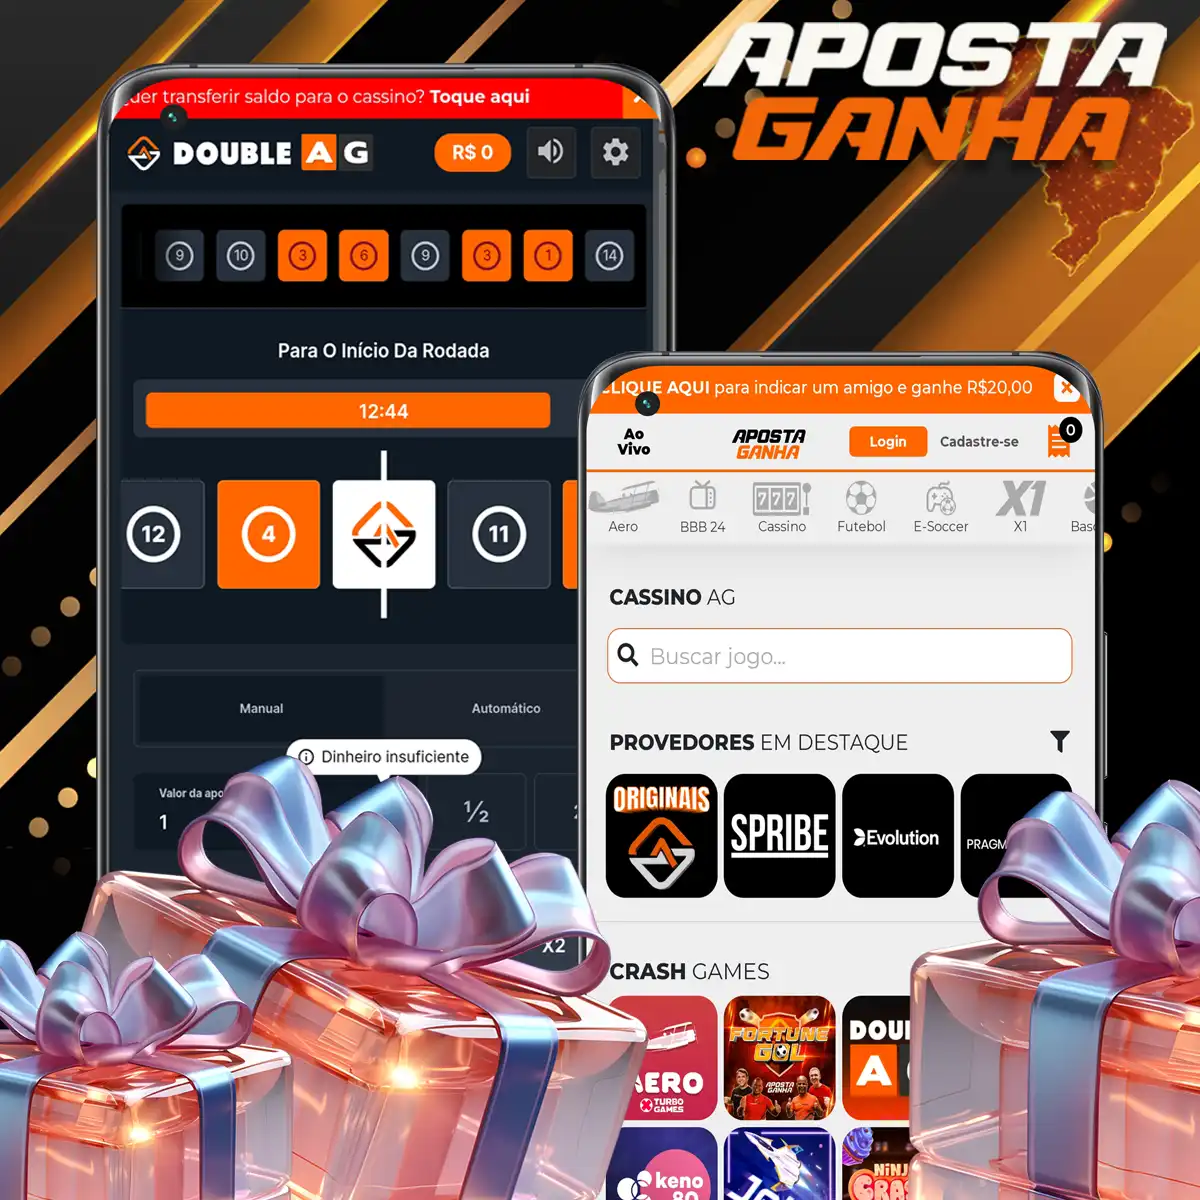 Cыграйте в эксклюзивную игру Aposta Ganha и получите свой бонус.